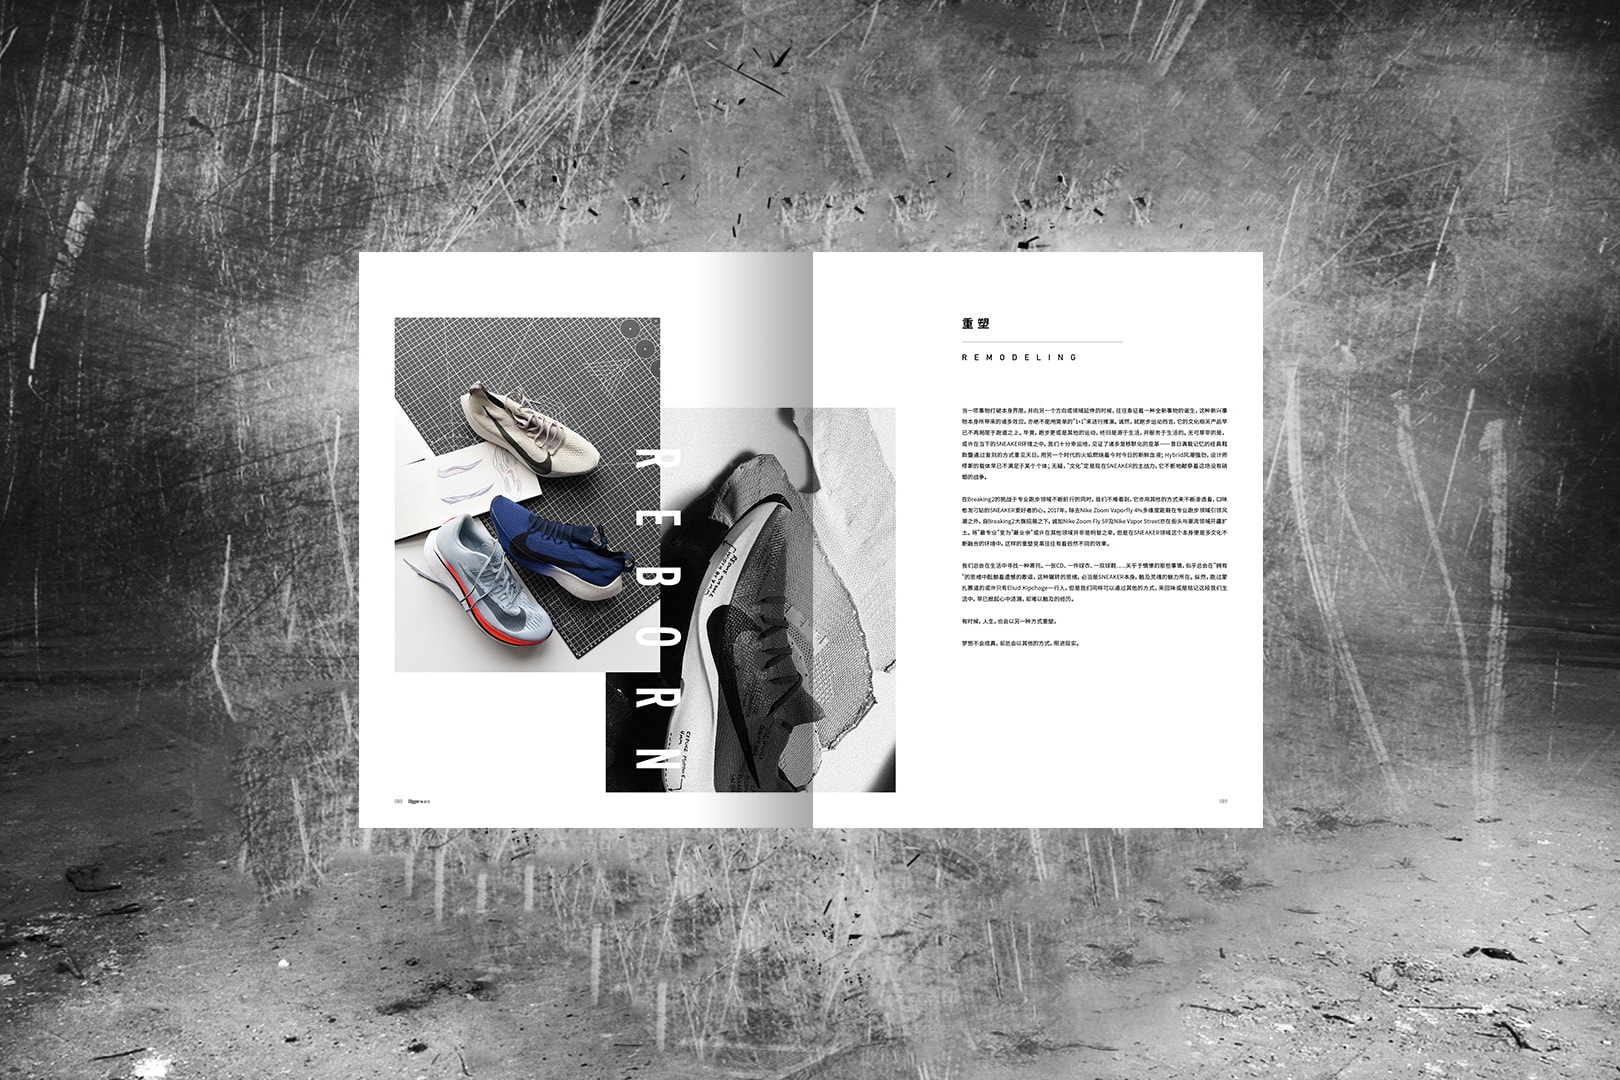 精品球鞋雜誌《Digger》Issue 12 正式上架